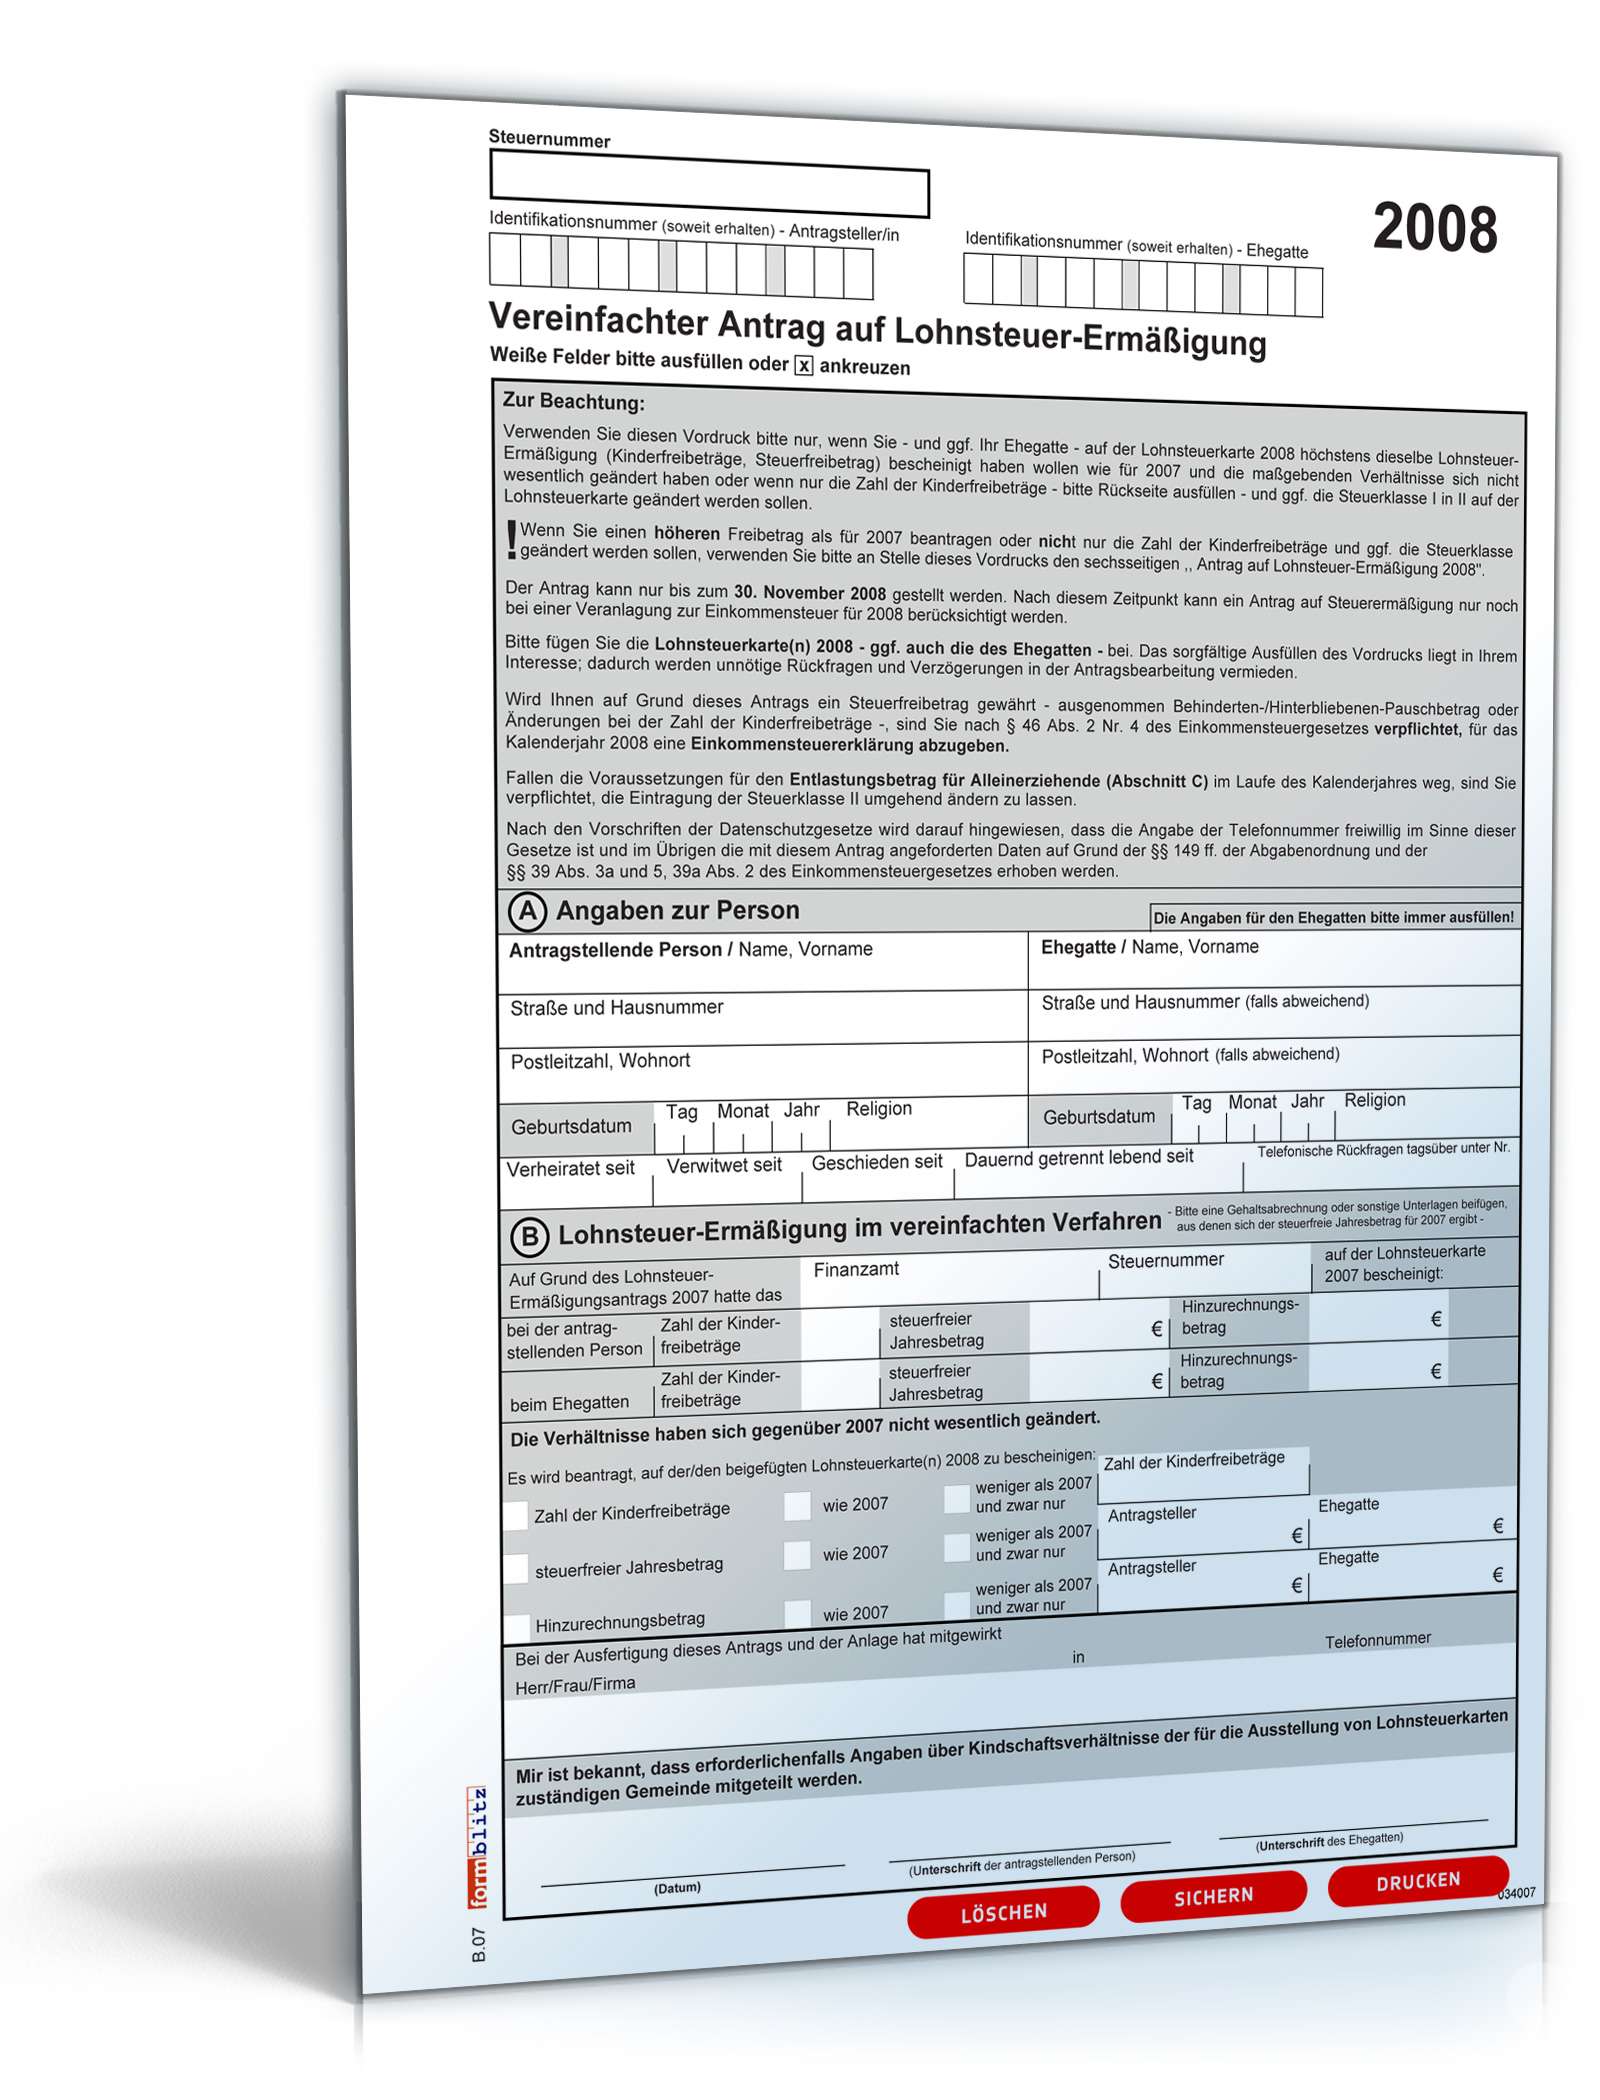 Hauptbild des Produkts: Vereinfachter Antrag auf Lohnsteuerermäßigung 2008